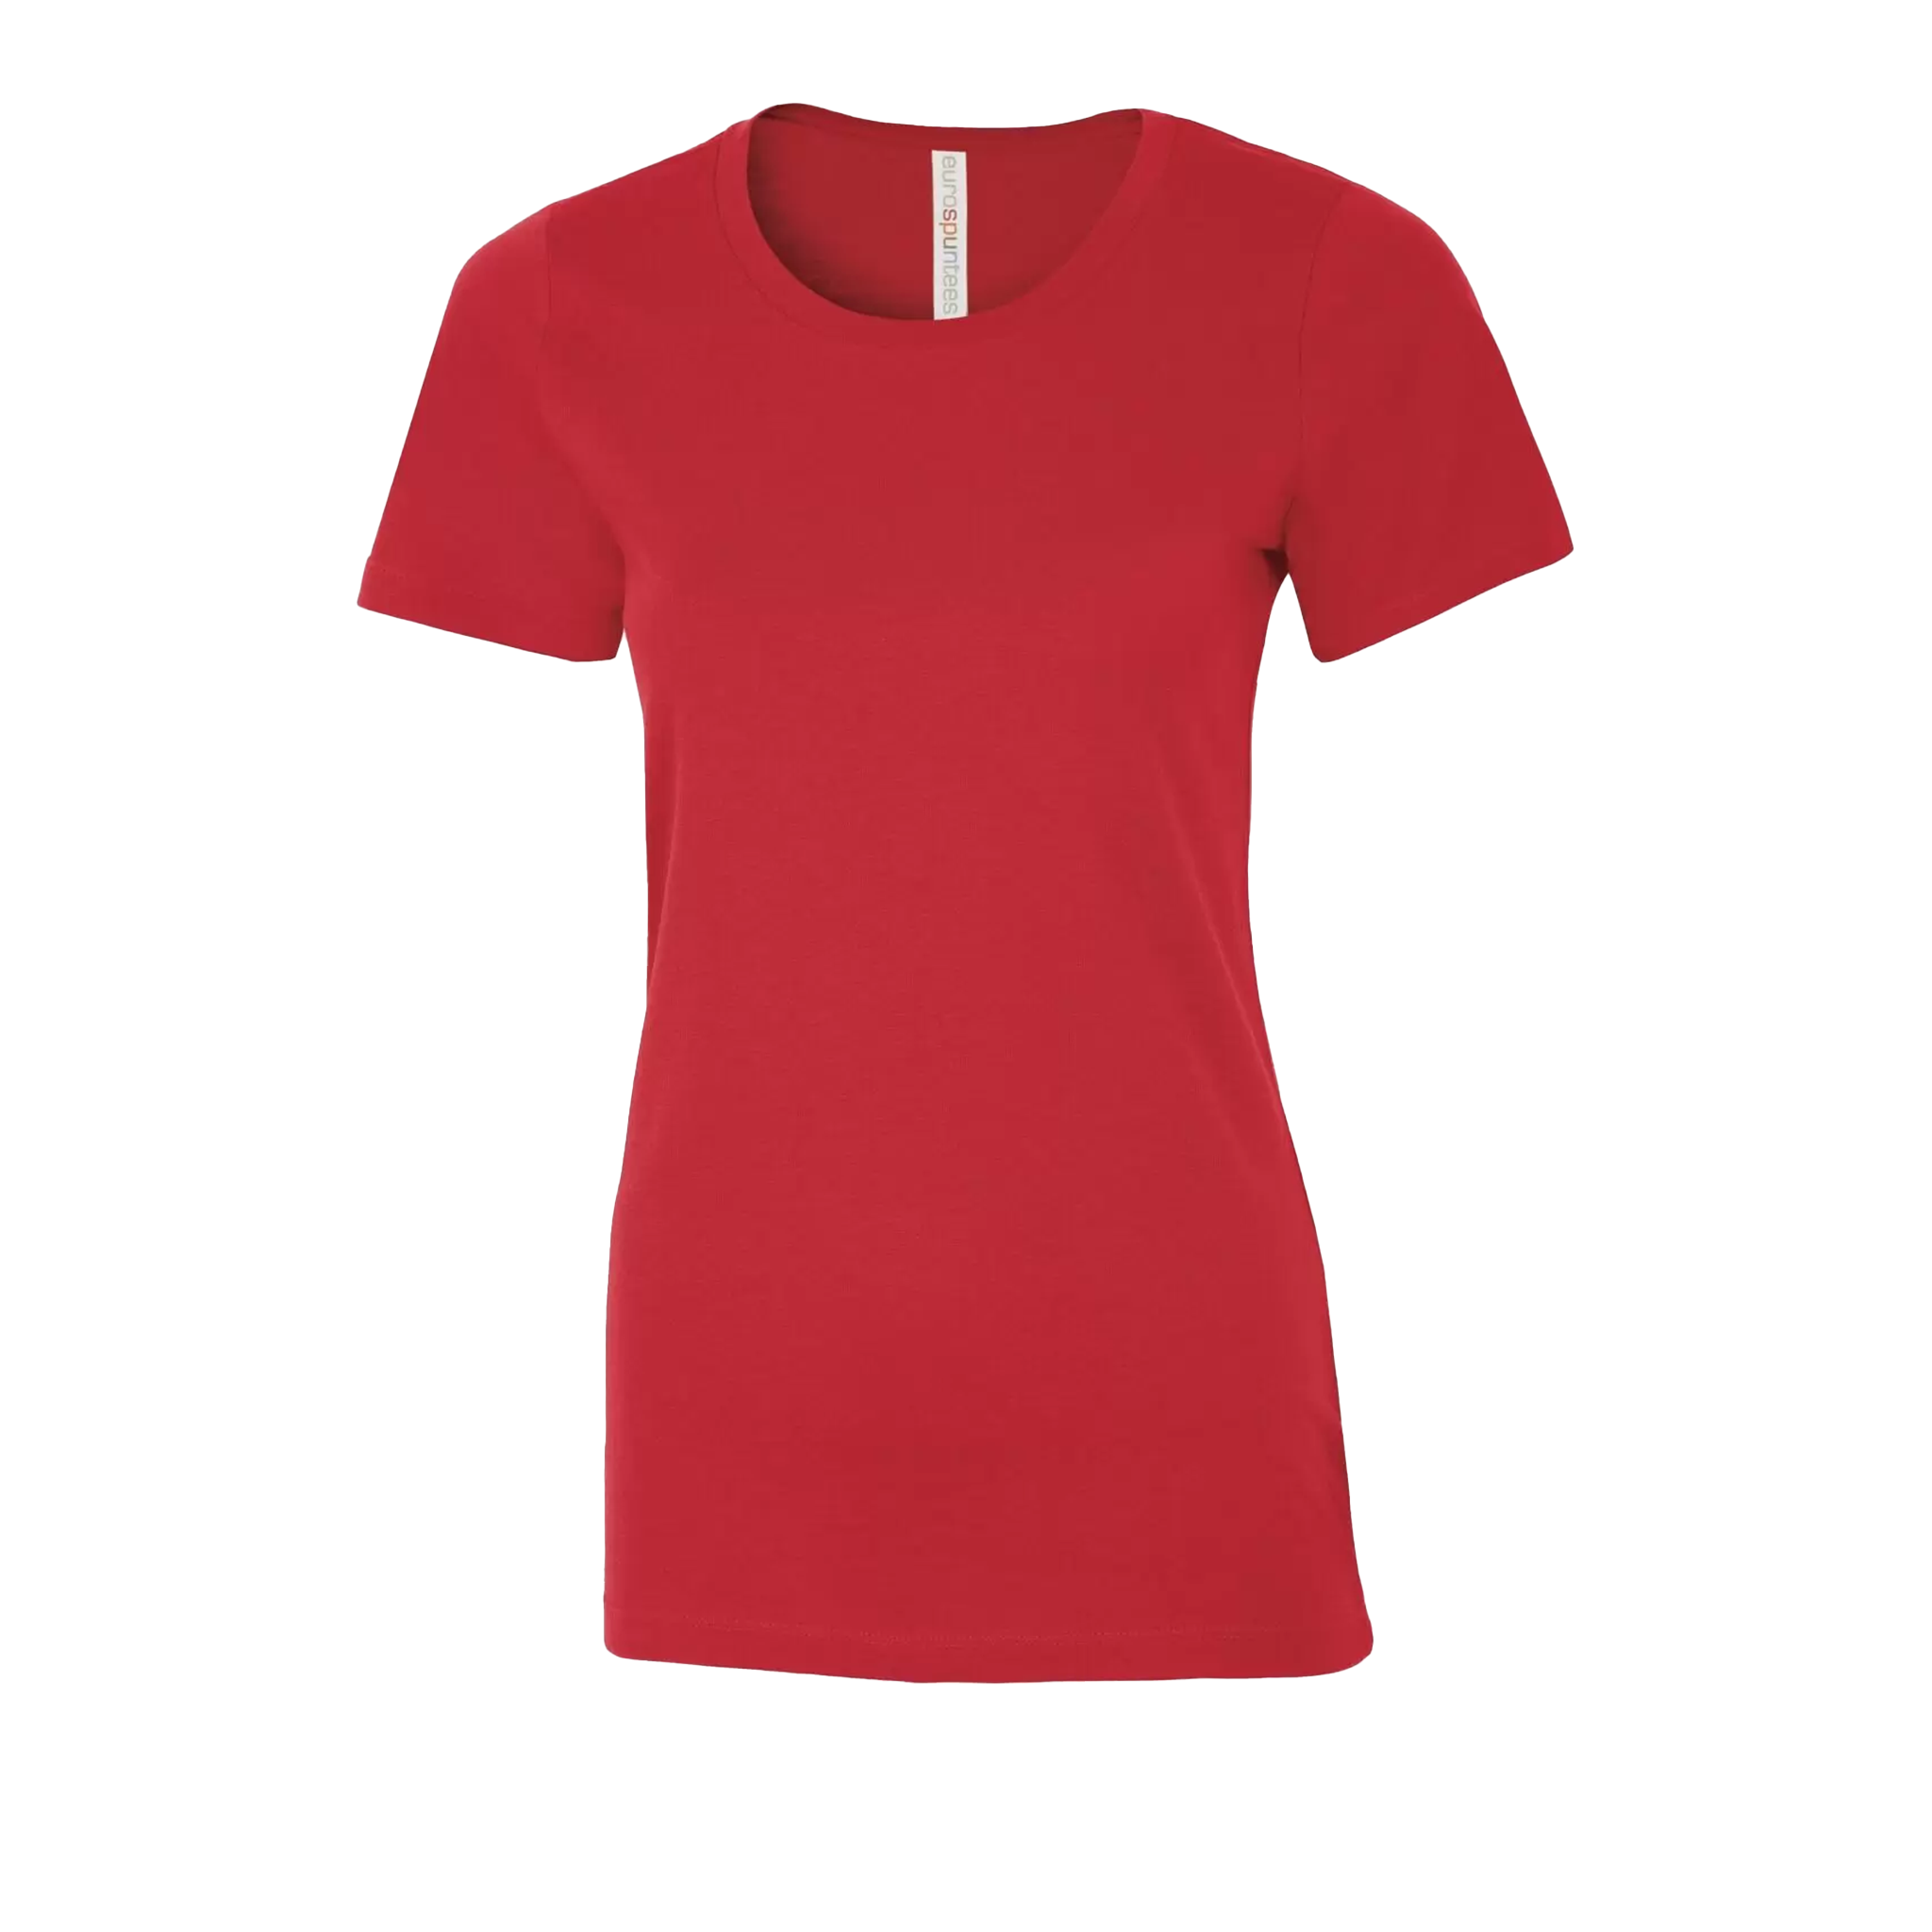 ATC Eurospun Ring Spun T-Shirt - Women's Sizing XS-4XL - Red